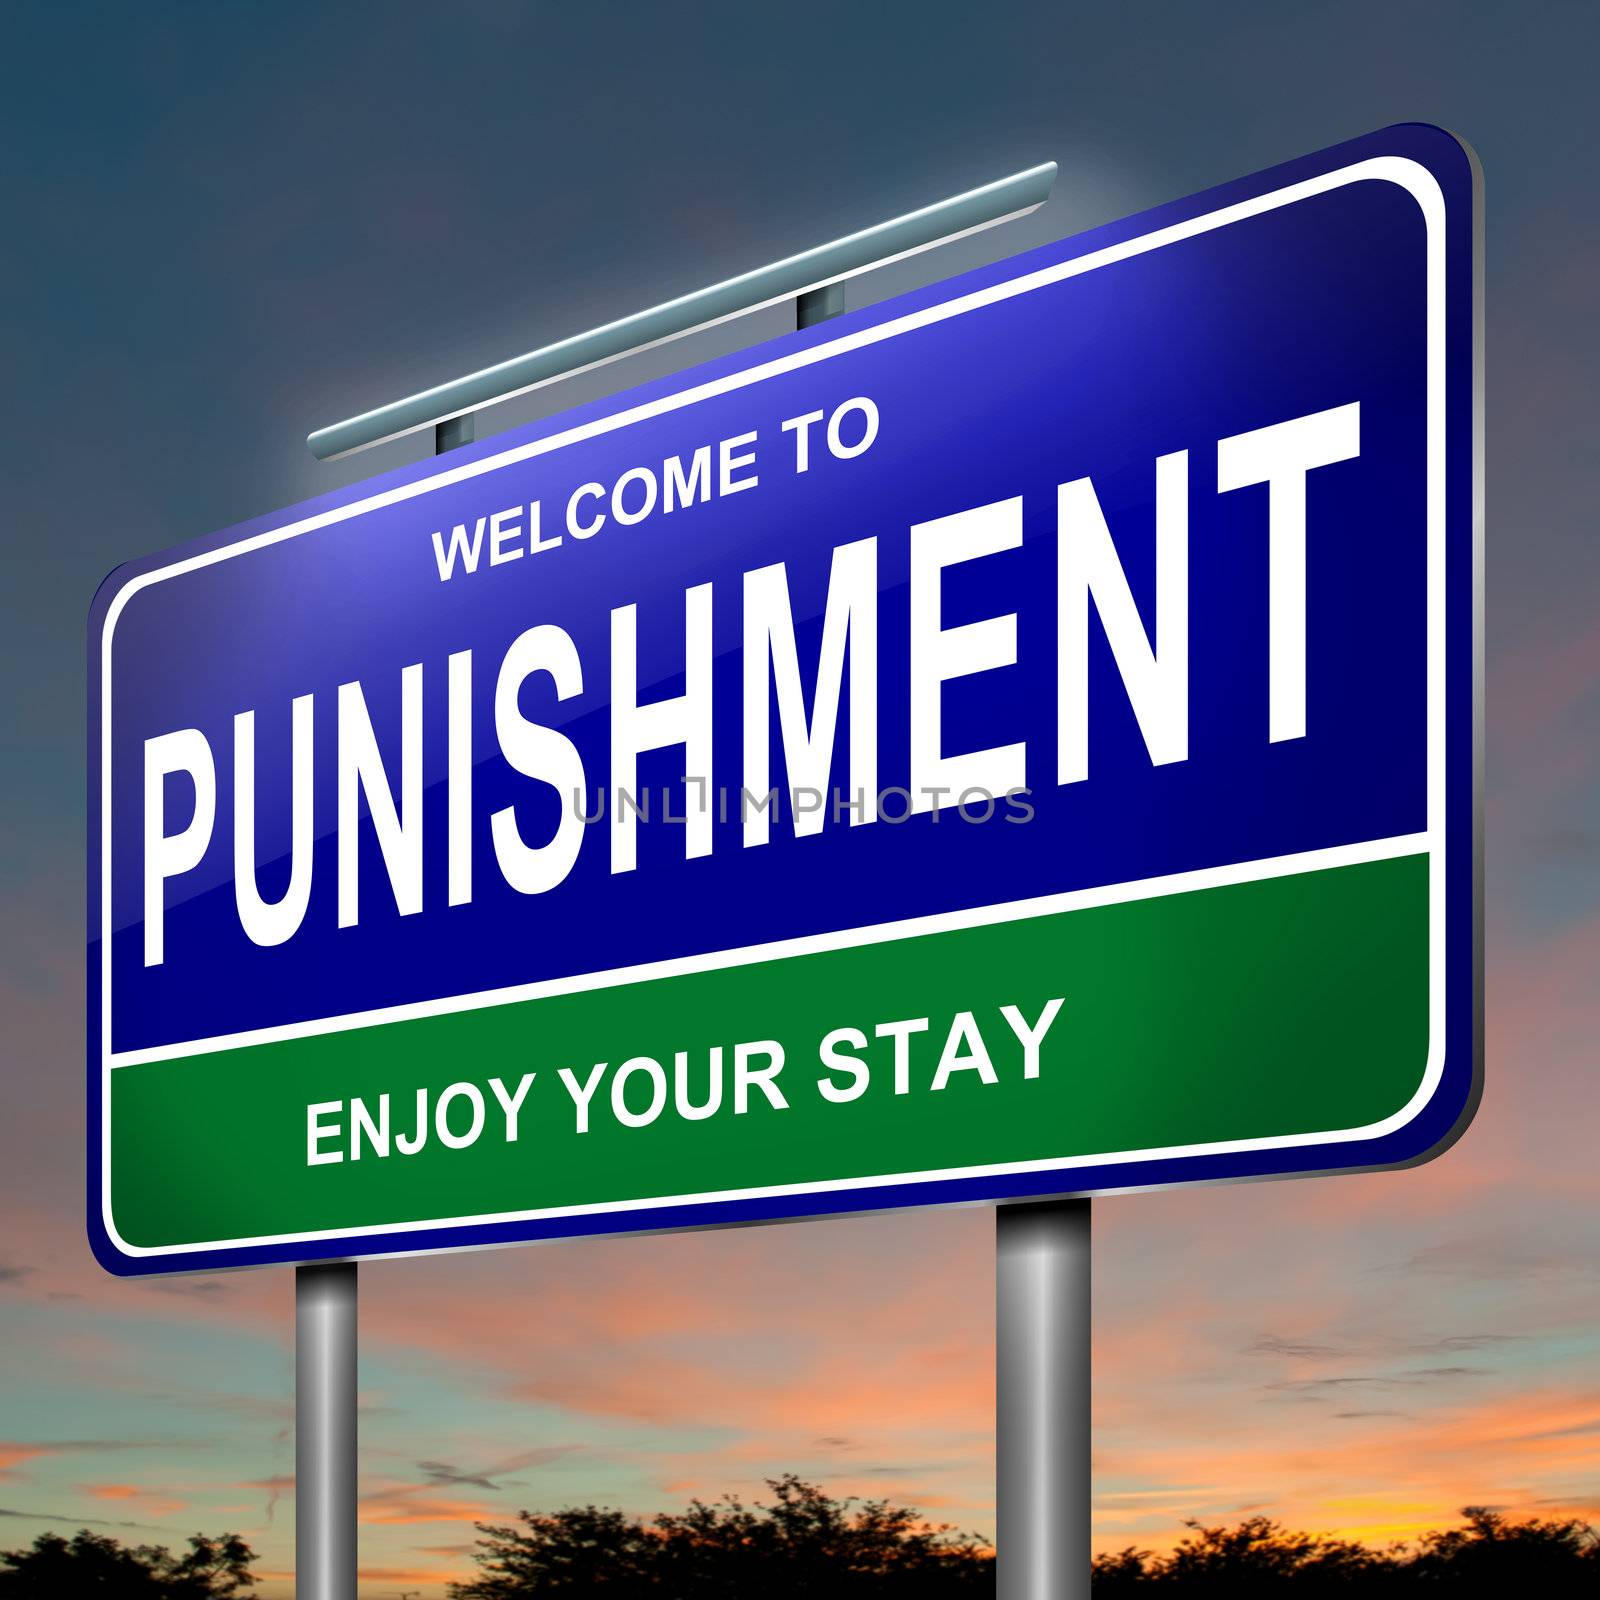 Punishment concept. by 72soul